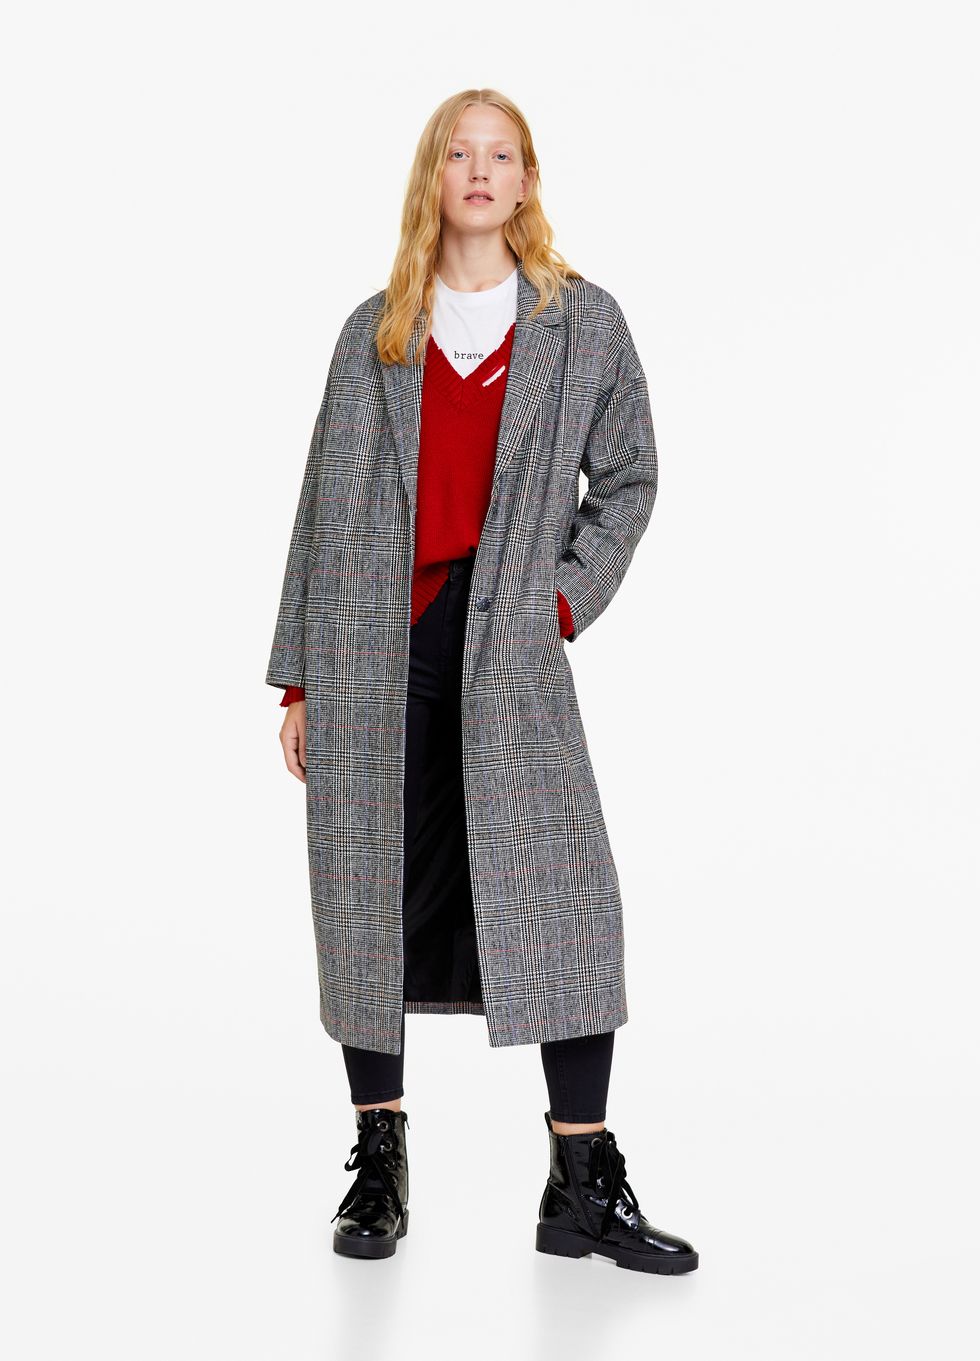 cappotti a quadri 2019, cappotti donna a quadri inverno 2019, cappotti a quadri sotto le 200 euro